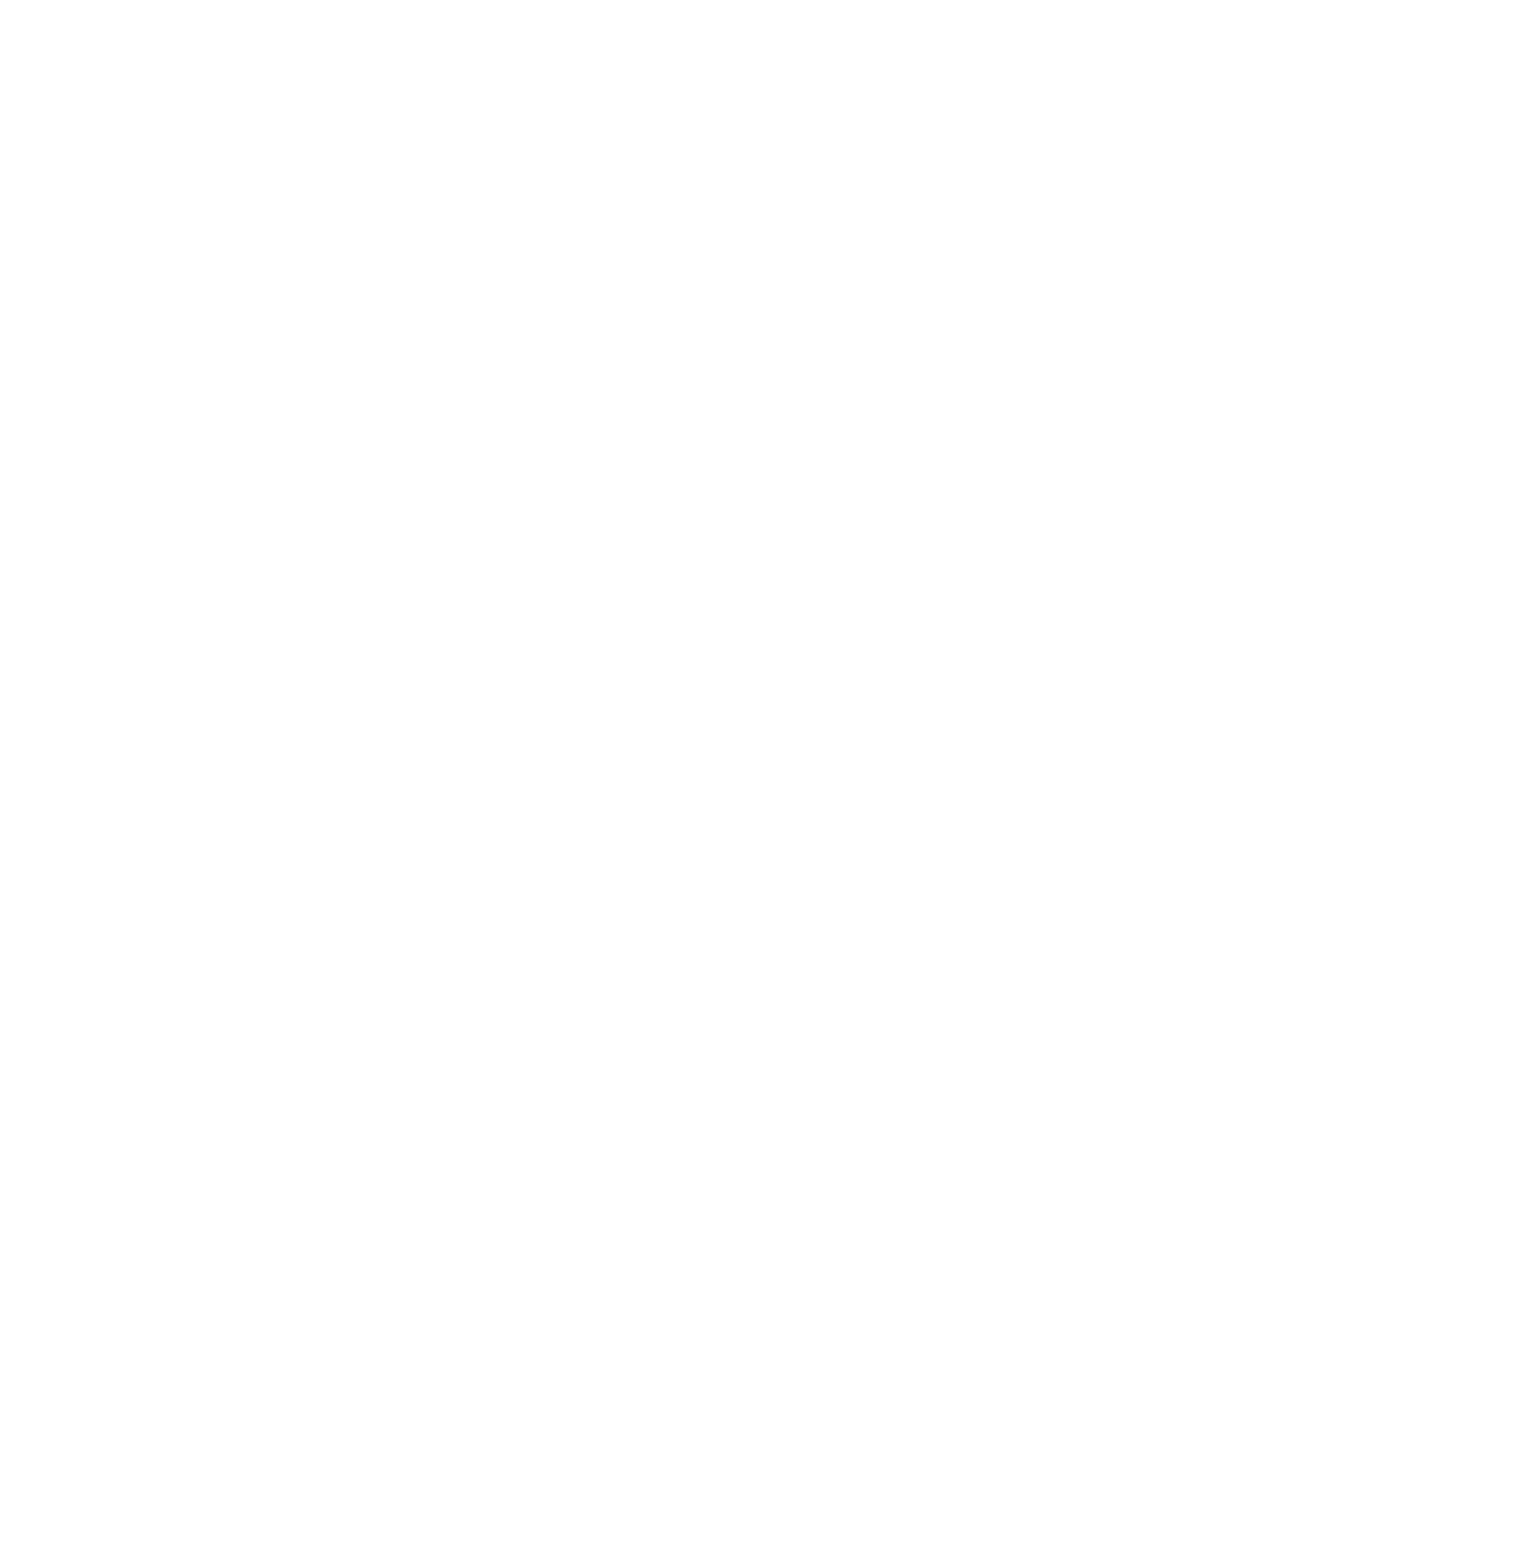 Gamesparcs logo for dark backgrounds (transparent PNG)